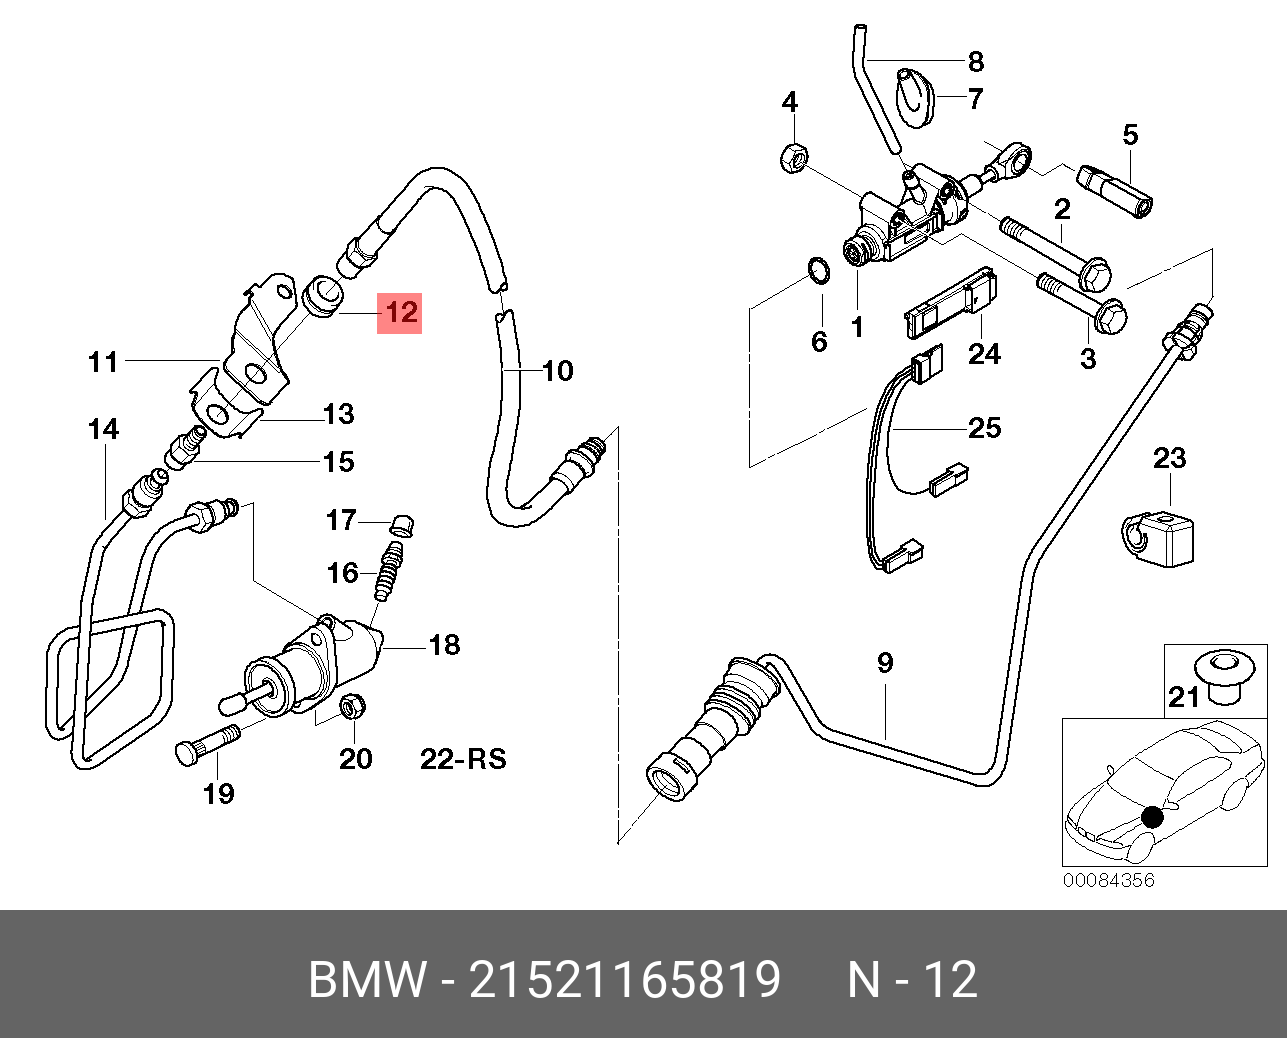 Трубка сцепления BMW e46. Шланг сцепления БМВ е46. Трубка сцепления БМВ е39. Трубка сцепления БМВ е36. Шланг главного цилиндра сцепления